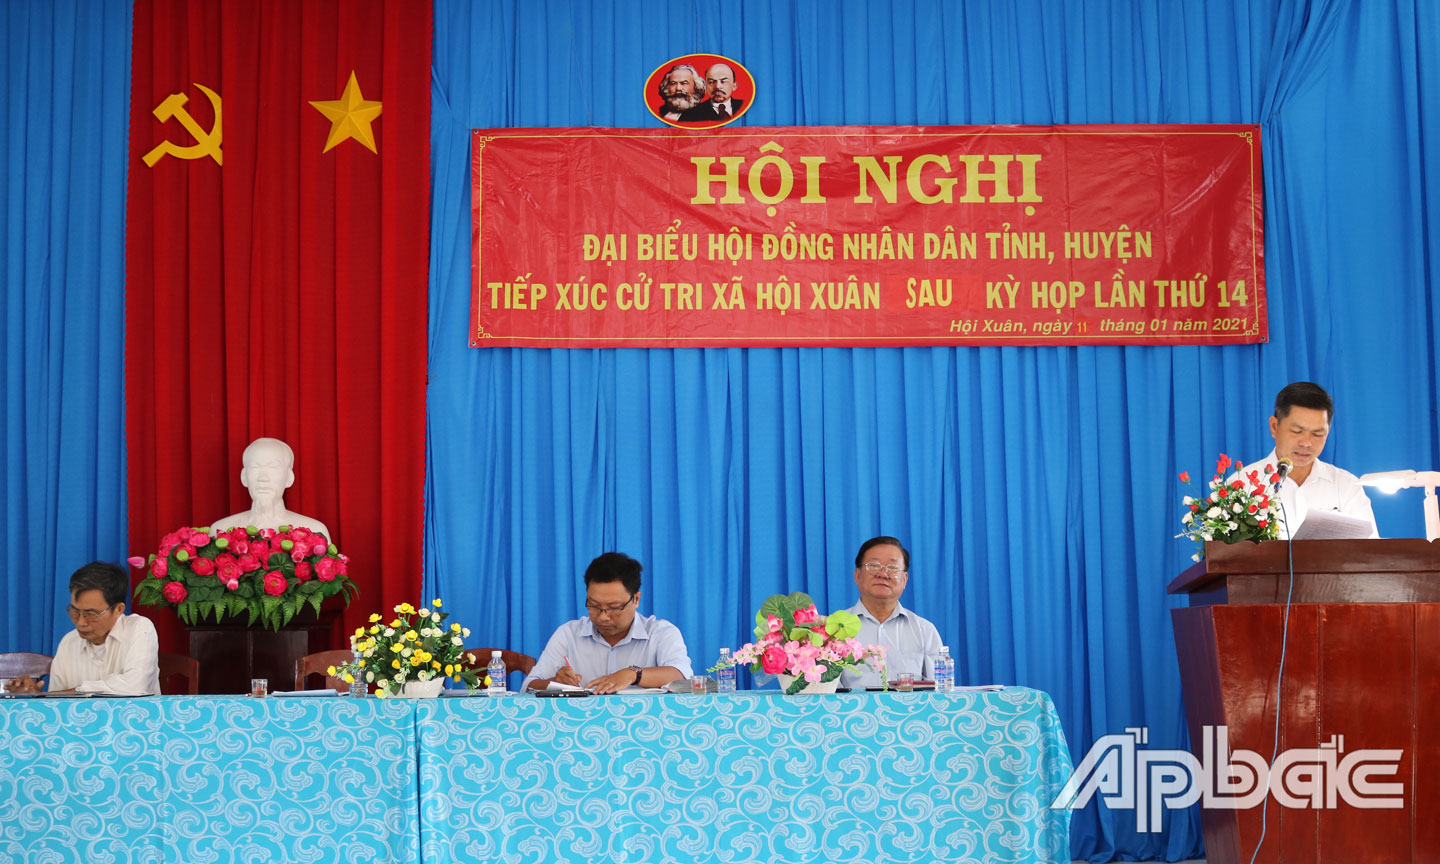 Tổ Đại biểu HĐND tỉnh, huyện tiếp xúc cử tri xã Hội Xuân.